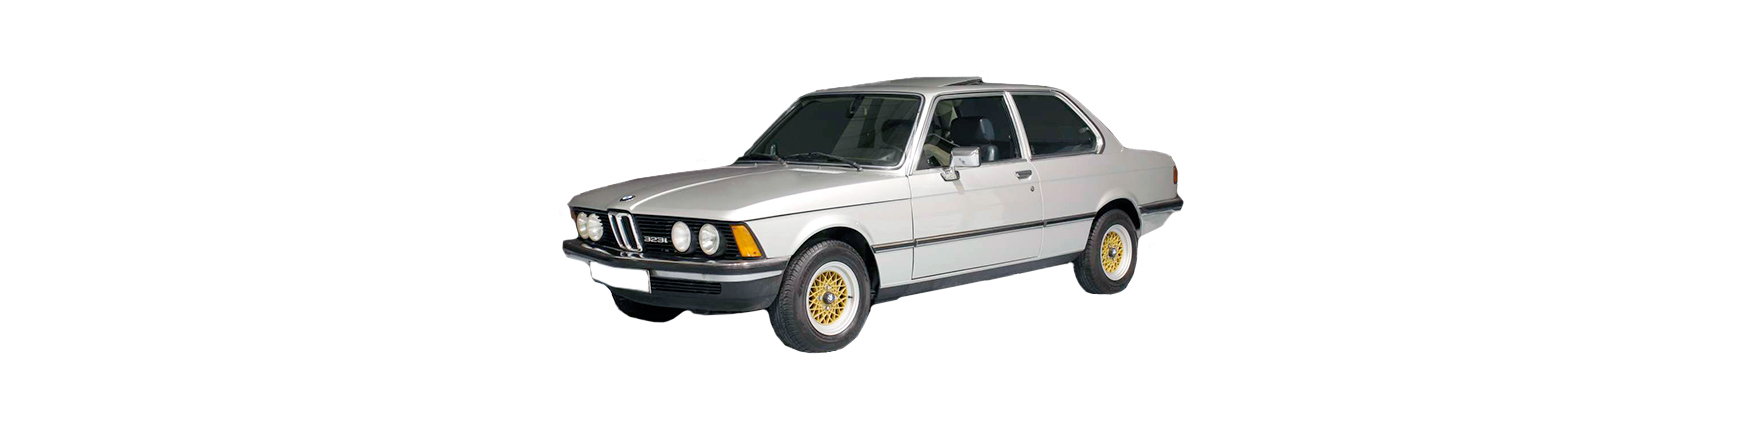 Piezas y Recambios De BMW SERIE 3 (E21) 06-1975 a 12-1982 | Veramauto.es